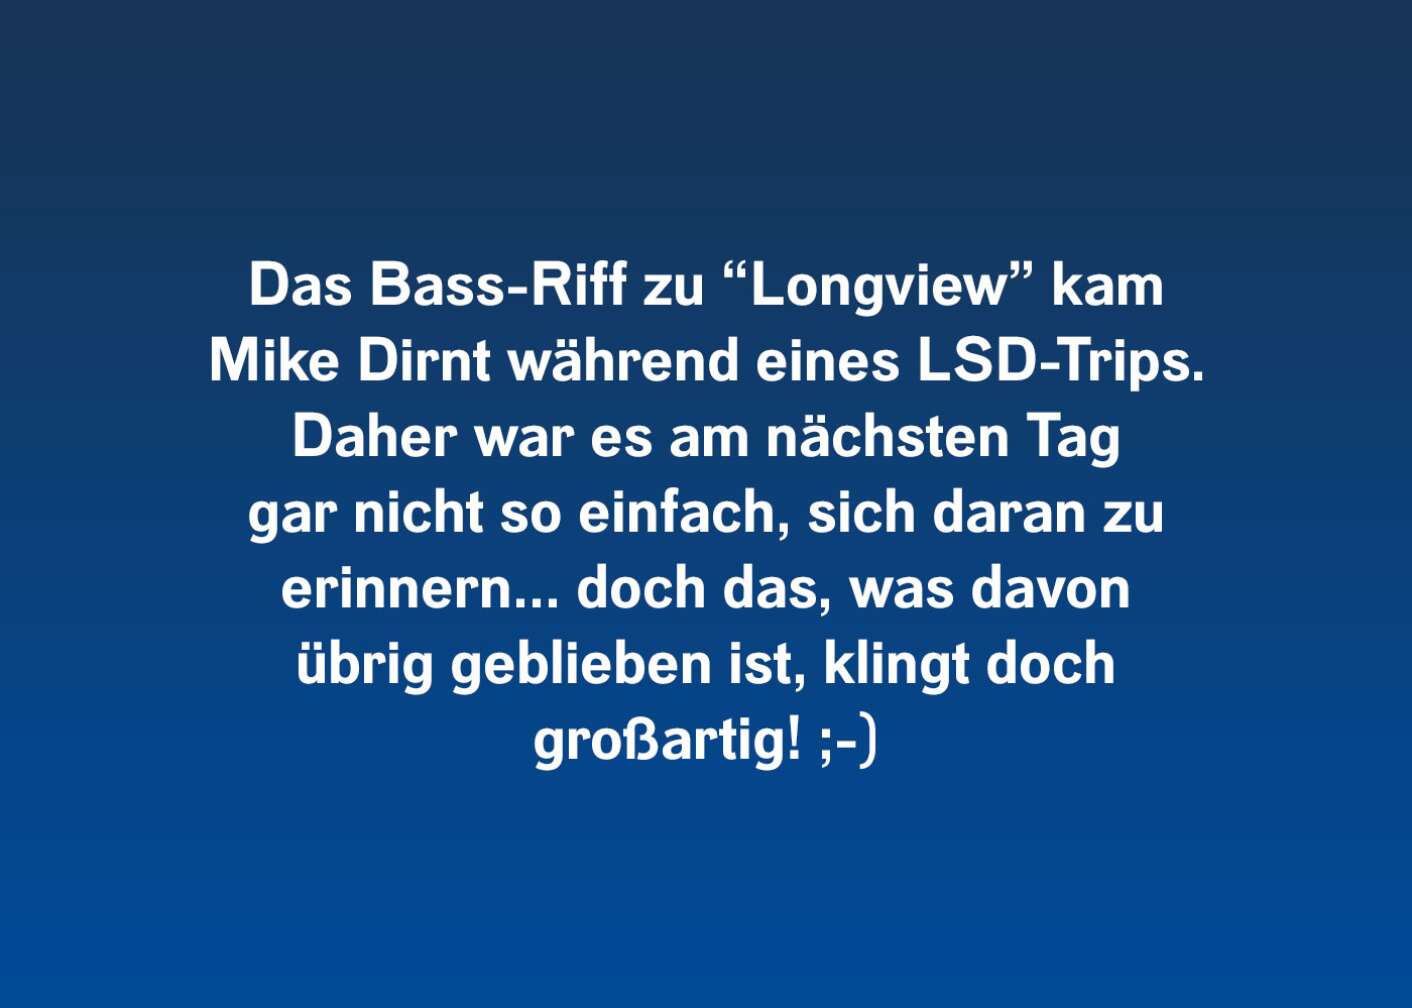 Das Bass-Riff zu "Longview" kam Mike Dirnt während eines LSD-Trips. Daher war es am nächsten Tag gar nicht so einfach, sich daran zu erinnern... doch das, was davon übrig geblieben ist, klingt doch großartig!